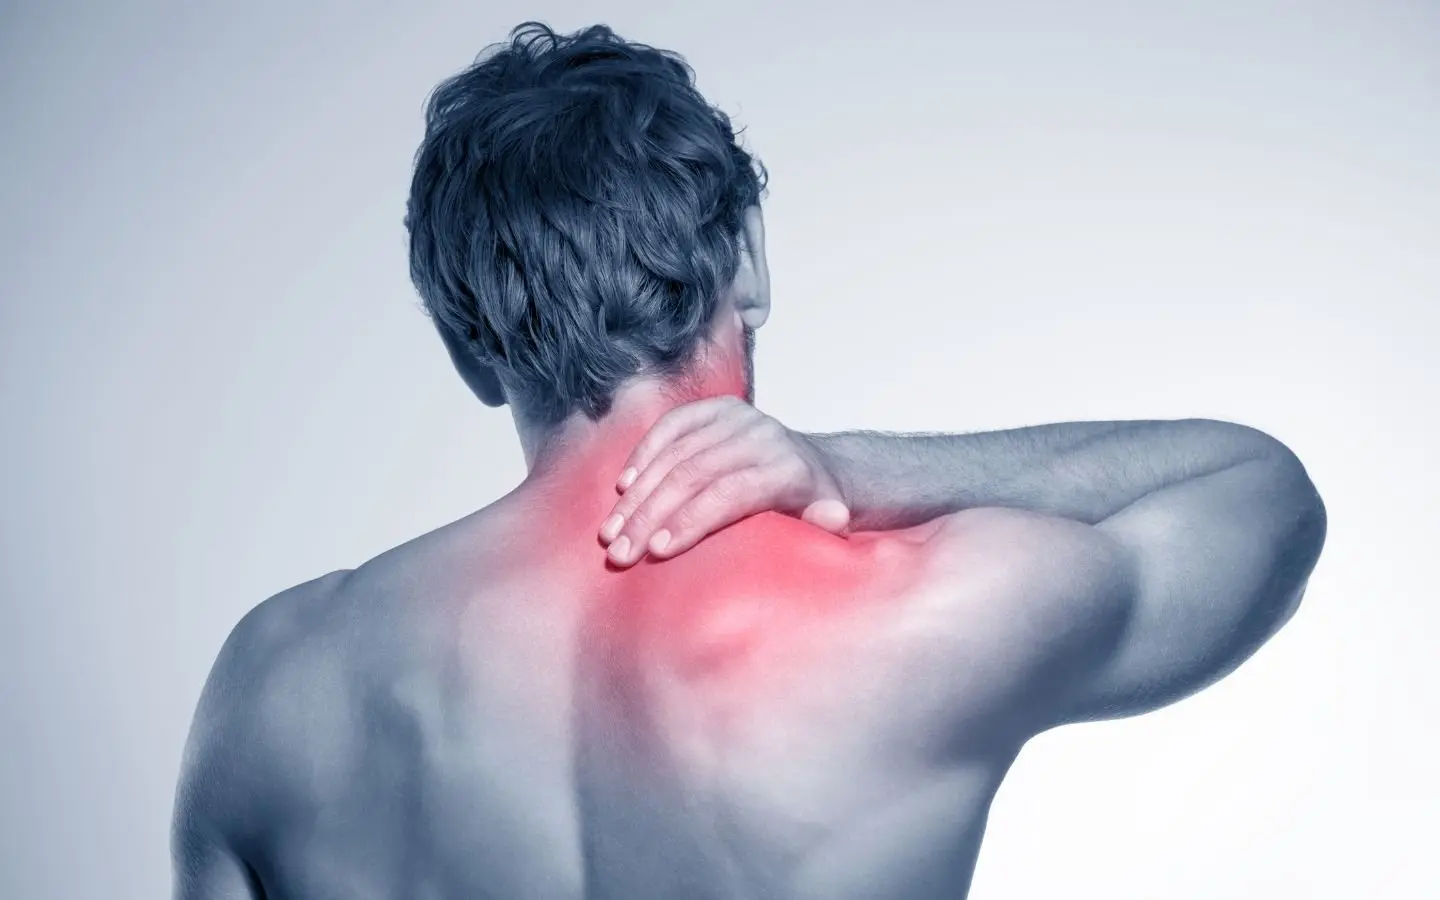 فردی که به دلیل درد زیاد گردن دست خود را به پشت گردن برده است و در تصویر نیز آن منطقه درد قرمز شده است